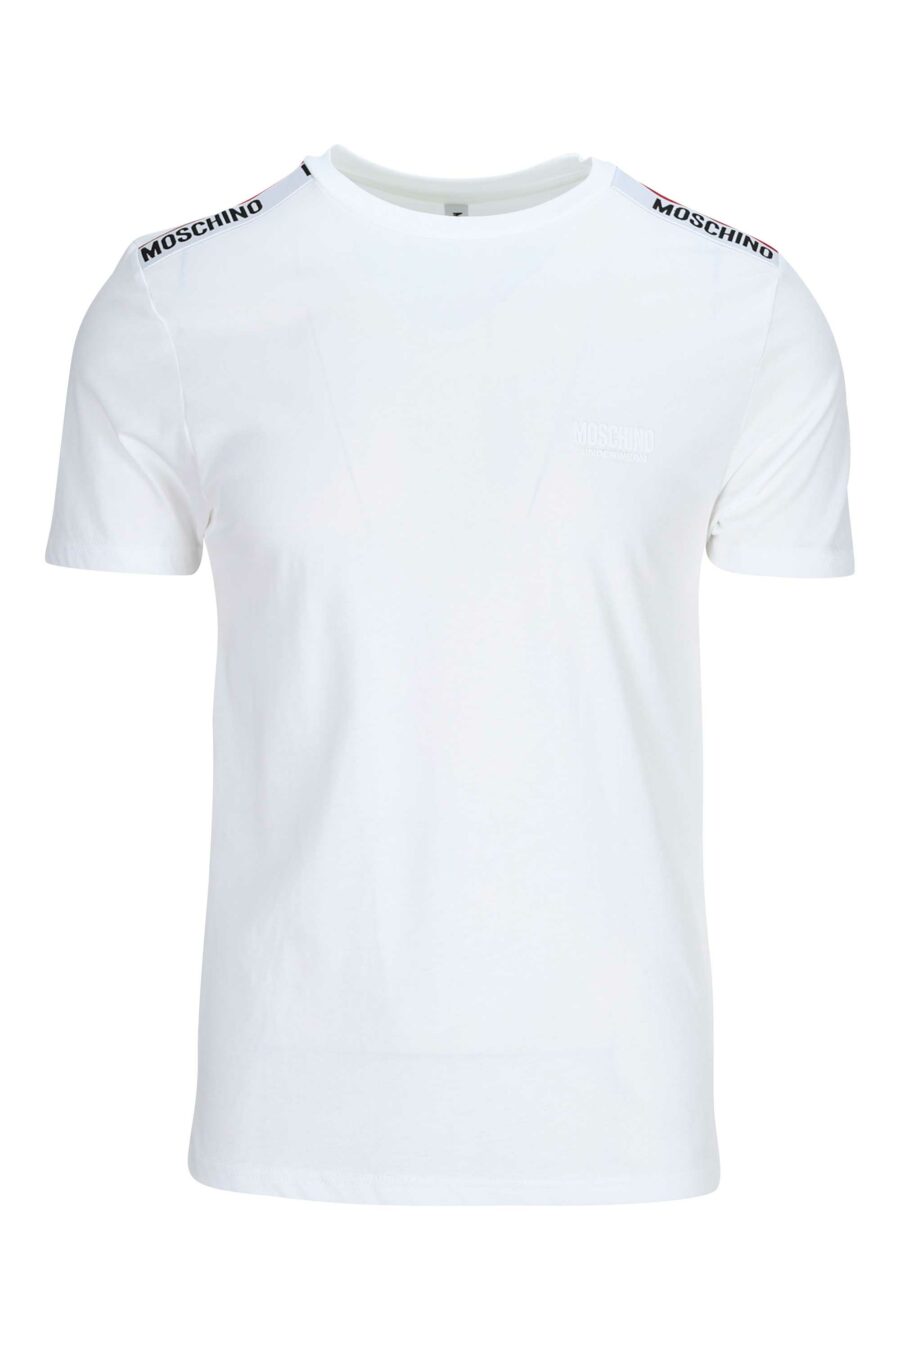 Camiseta blanca con logo en hombros en cinta - 667113024998